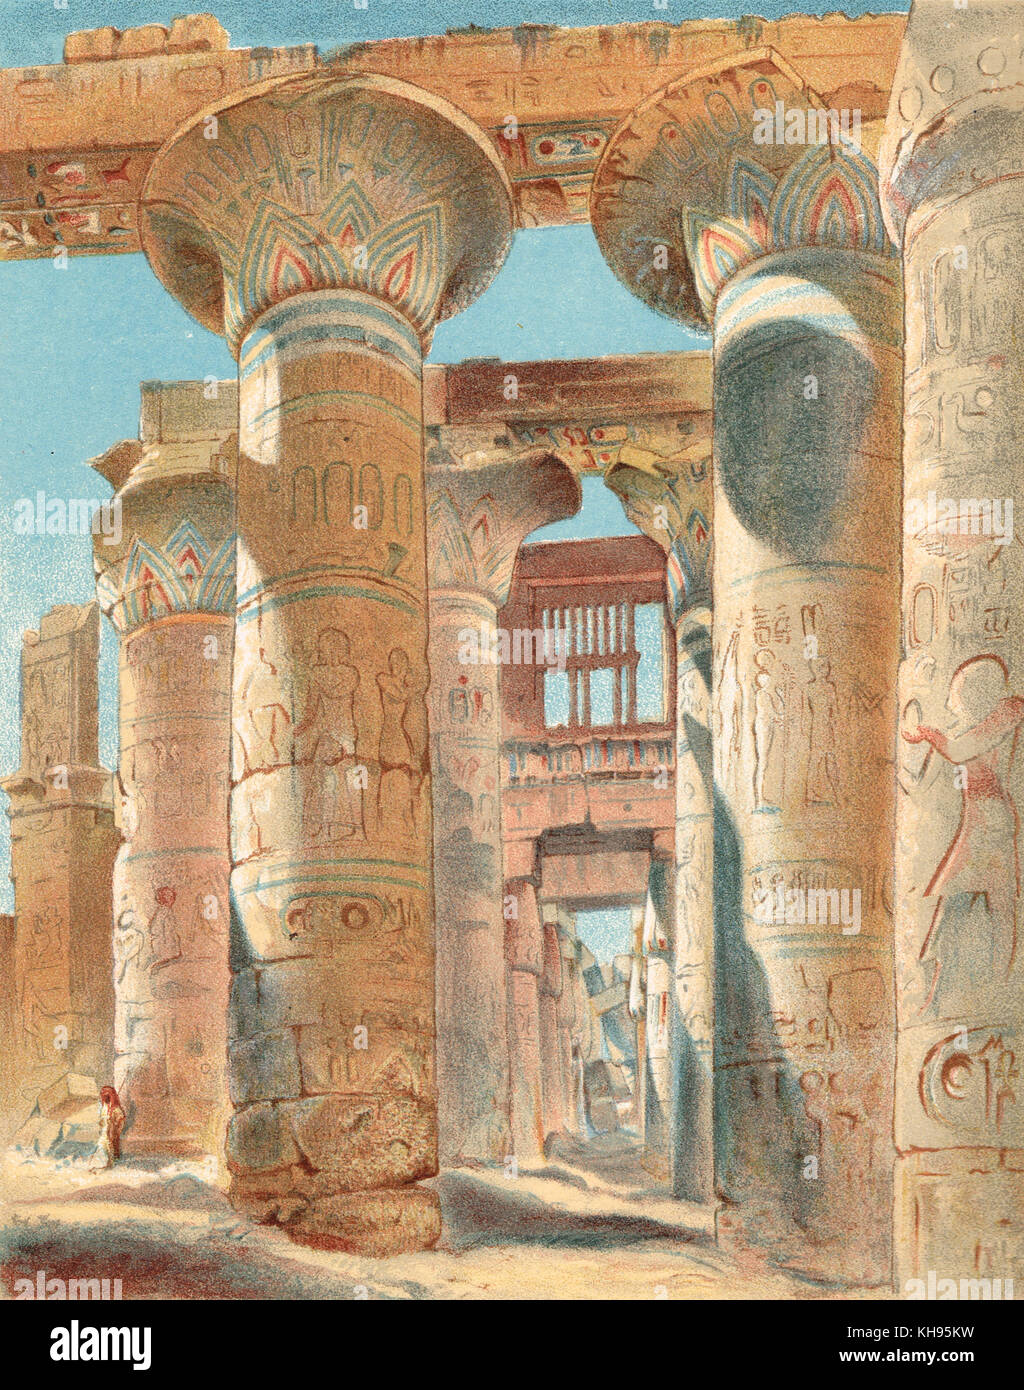 Salle hypostyle de Karnak, Egypte, 19e siècle, lithographie couleur Banque D'Images